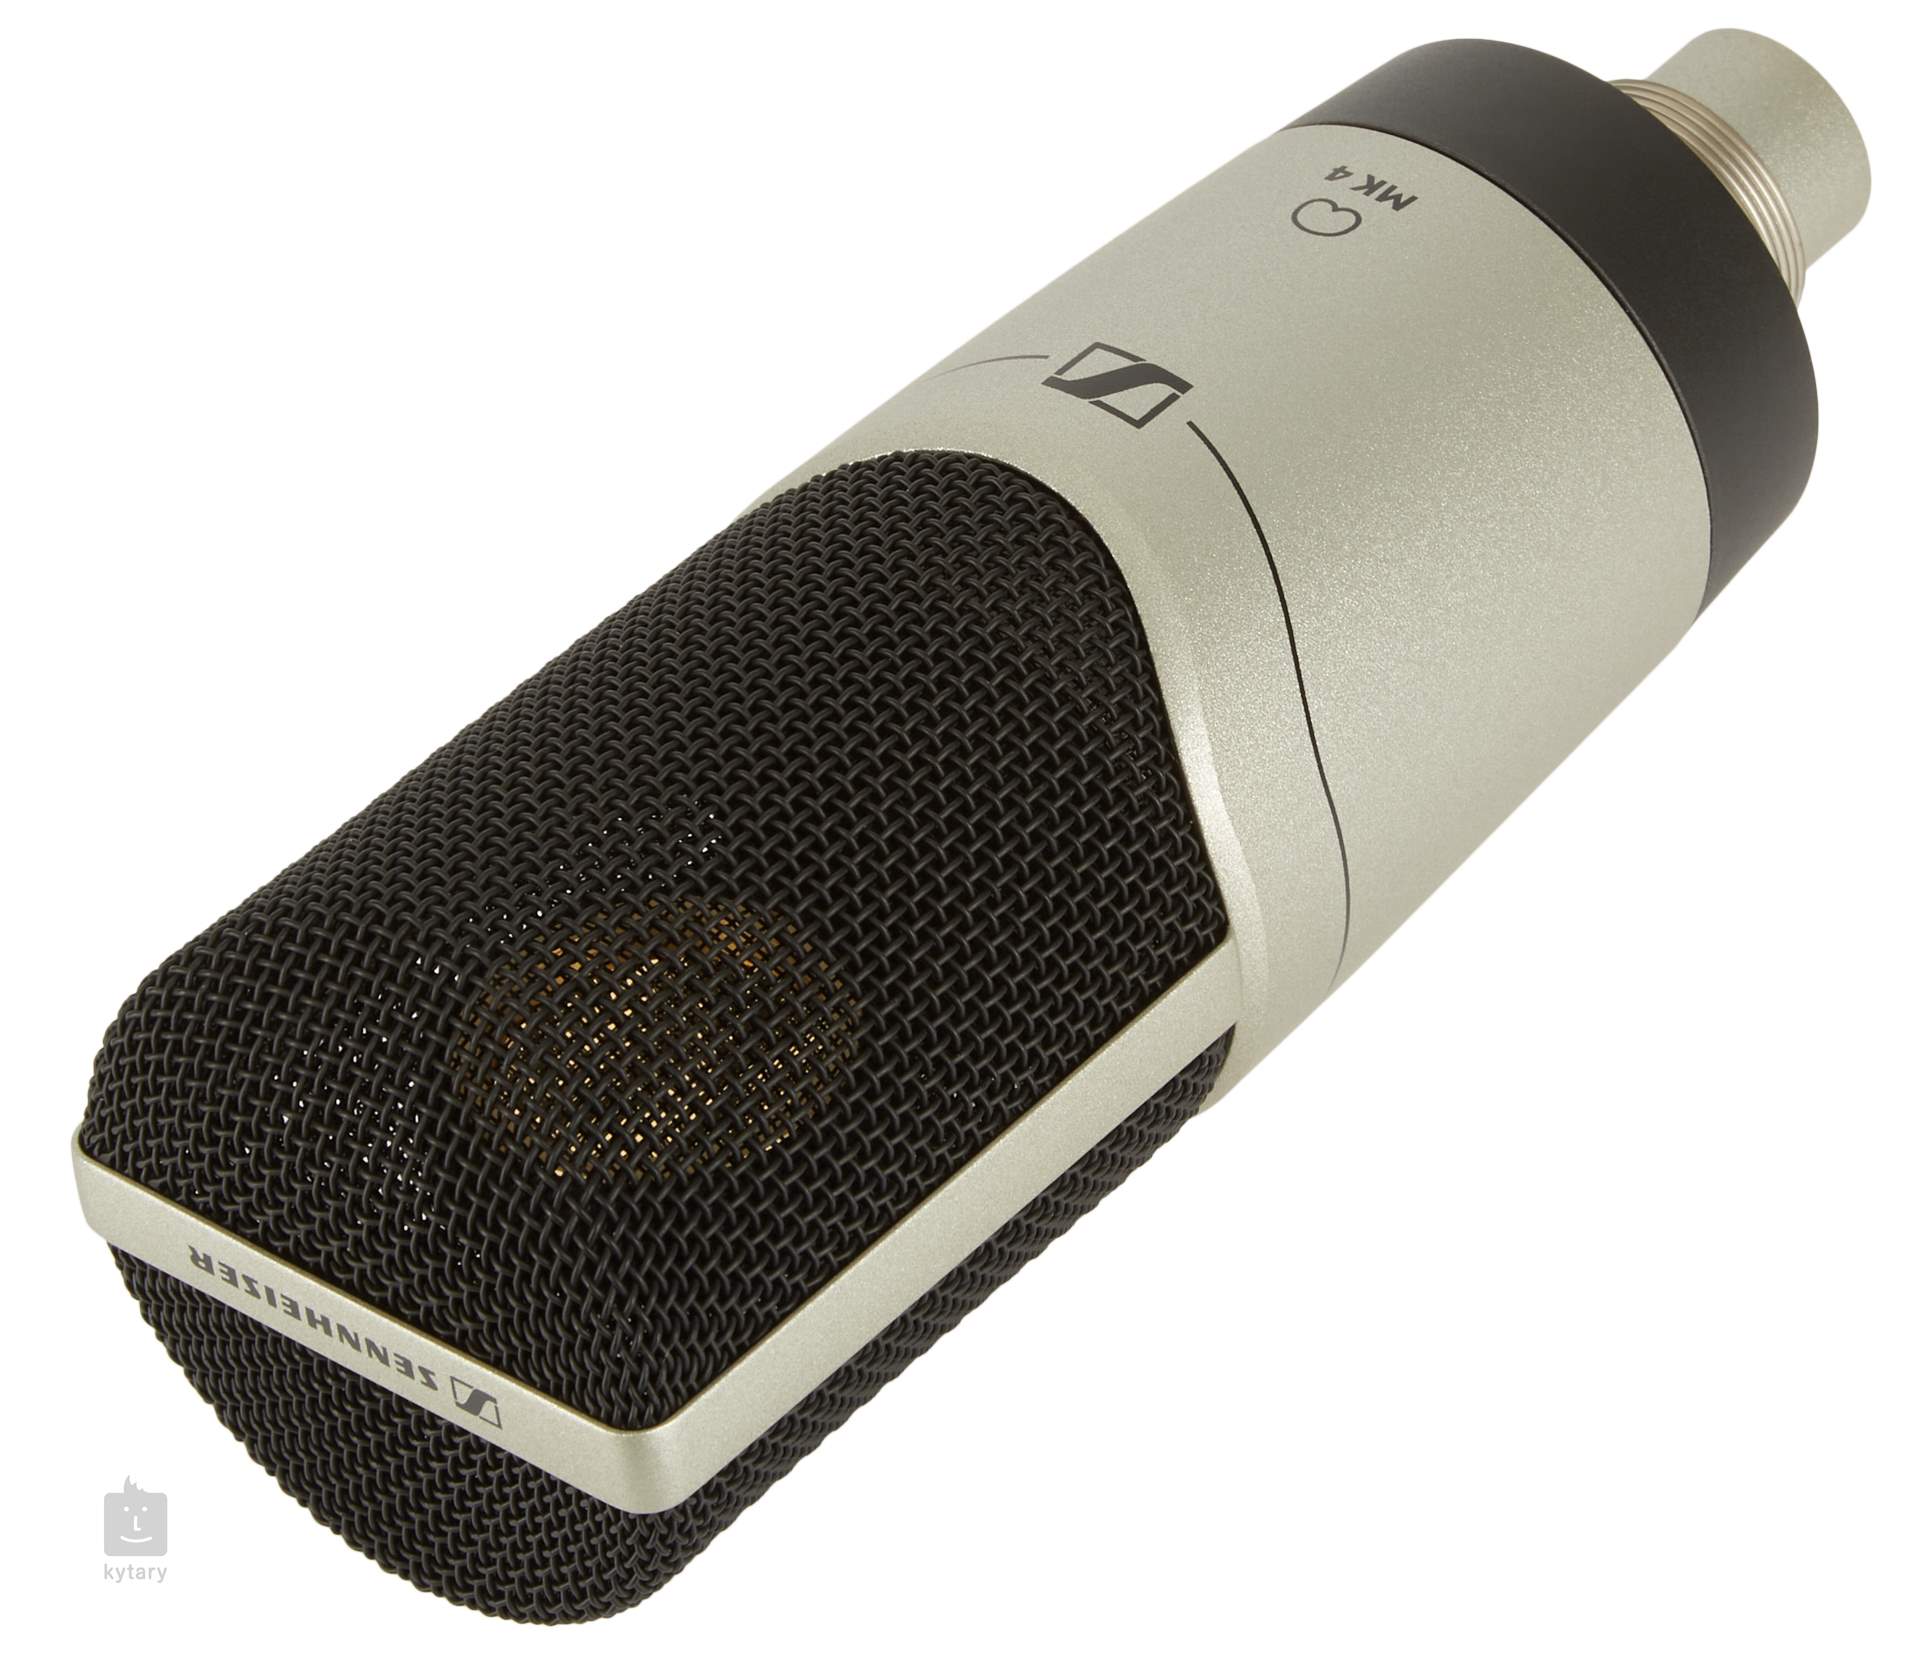 MK4 Micrófono profesional condensador cardioide, de 50Ω